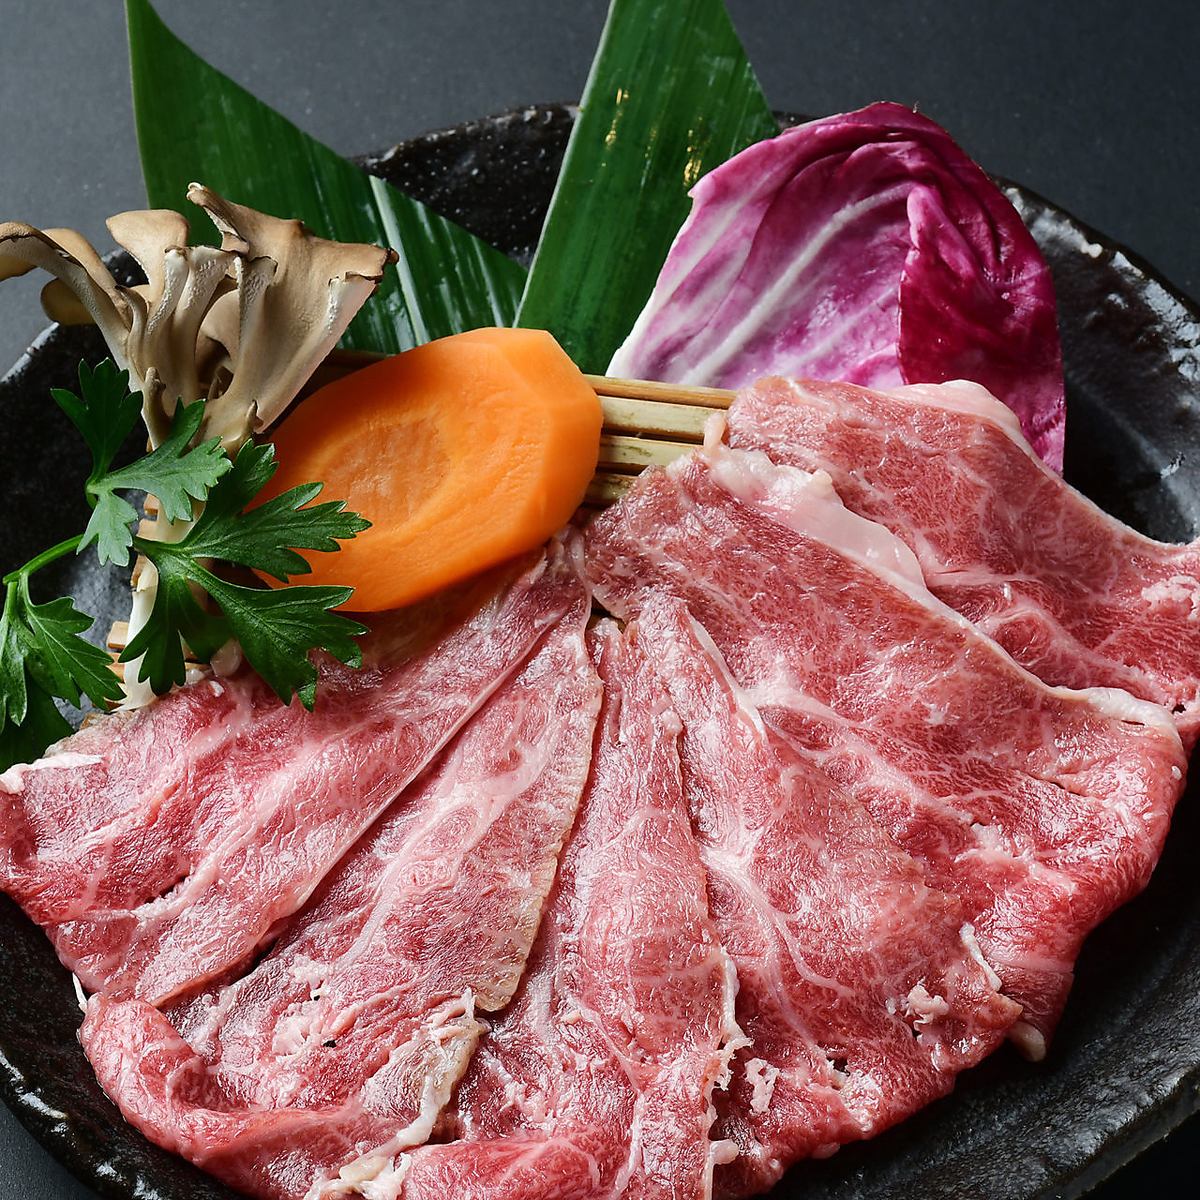 “三河牛”、“飞驒牛”、“仙台牛”是A5级的稀有品牌牛肉！